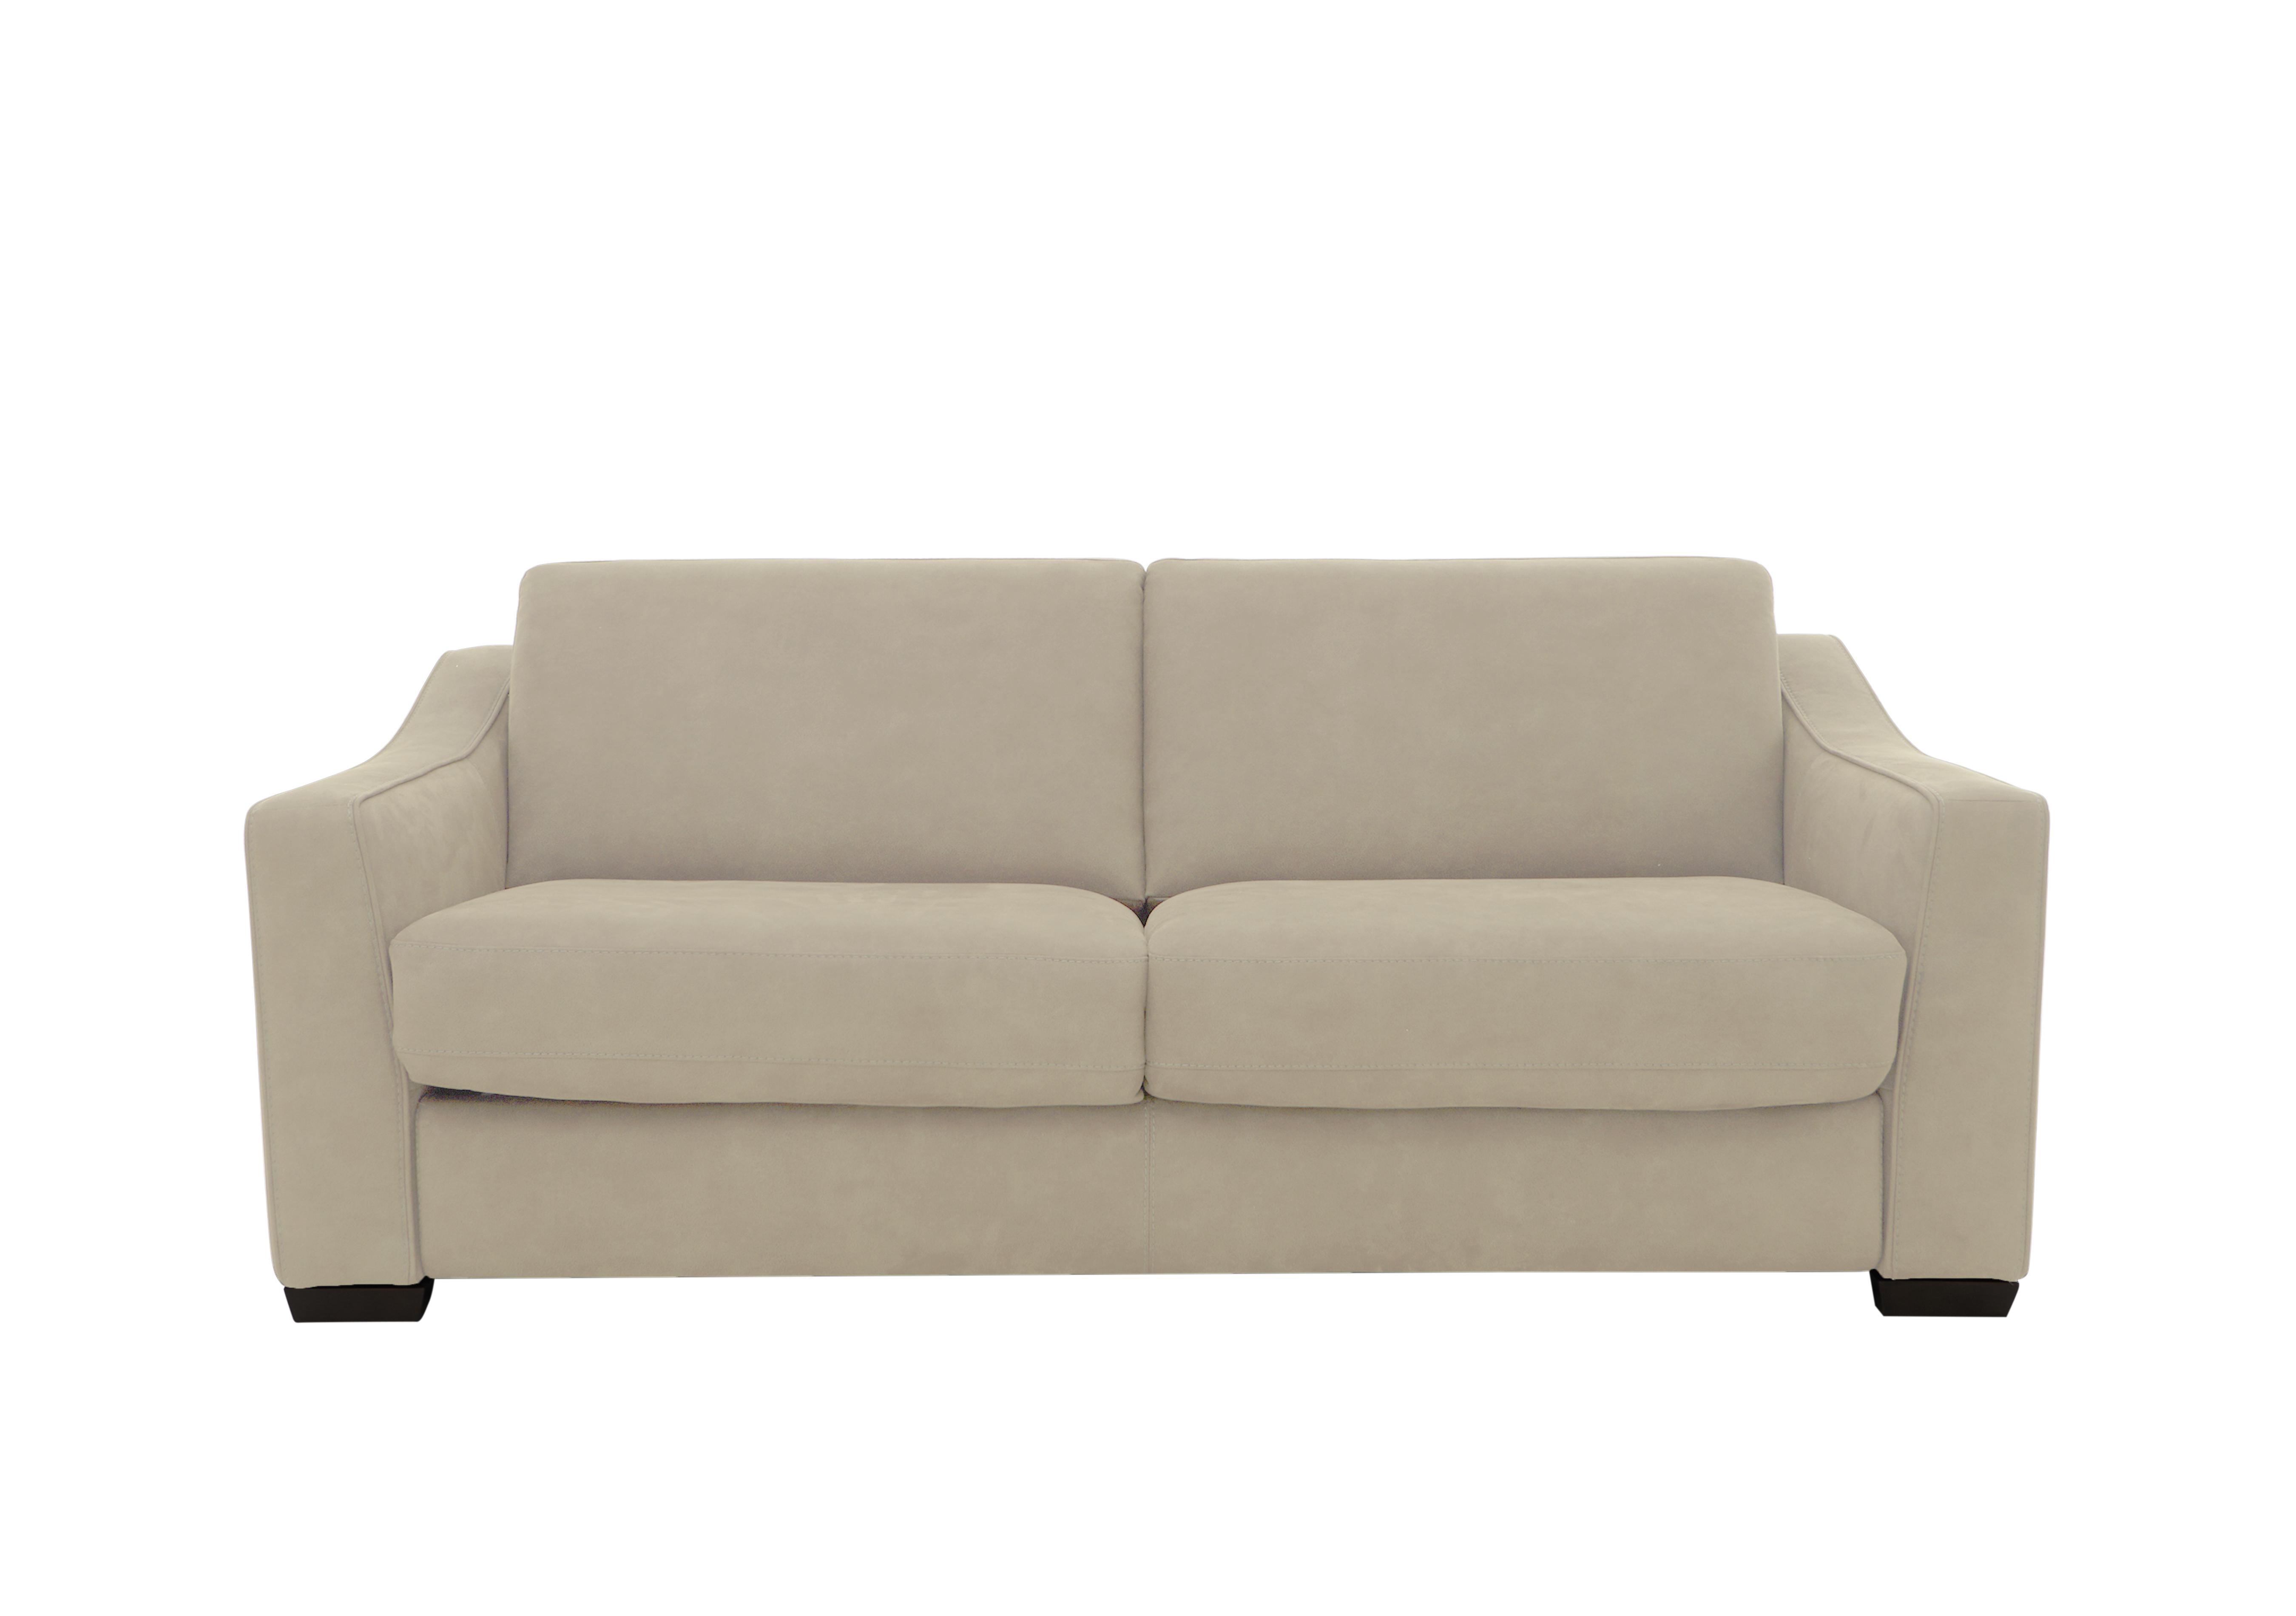 Optimus 3 Seater Fabric Sofa in Bfa-Blj-R20 Bisque on Furniture Village